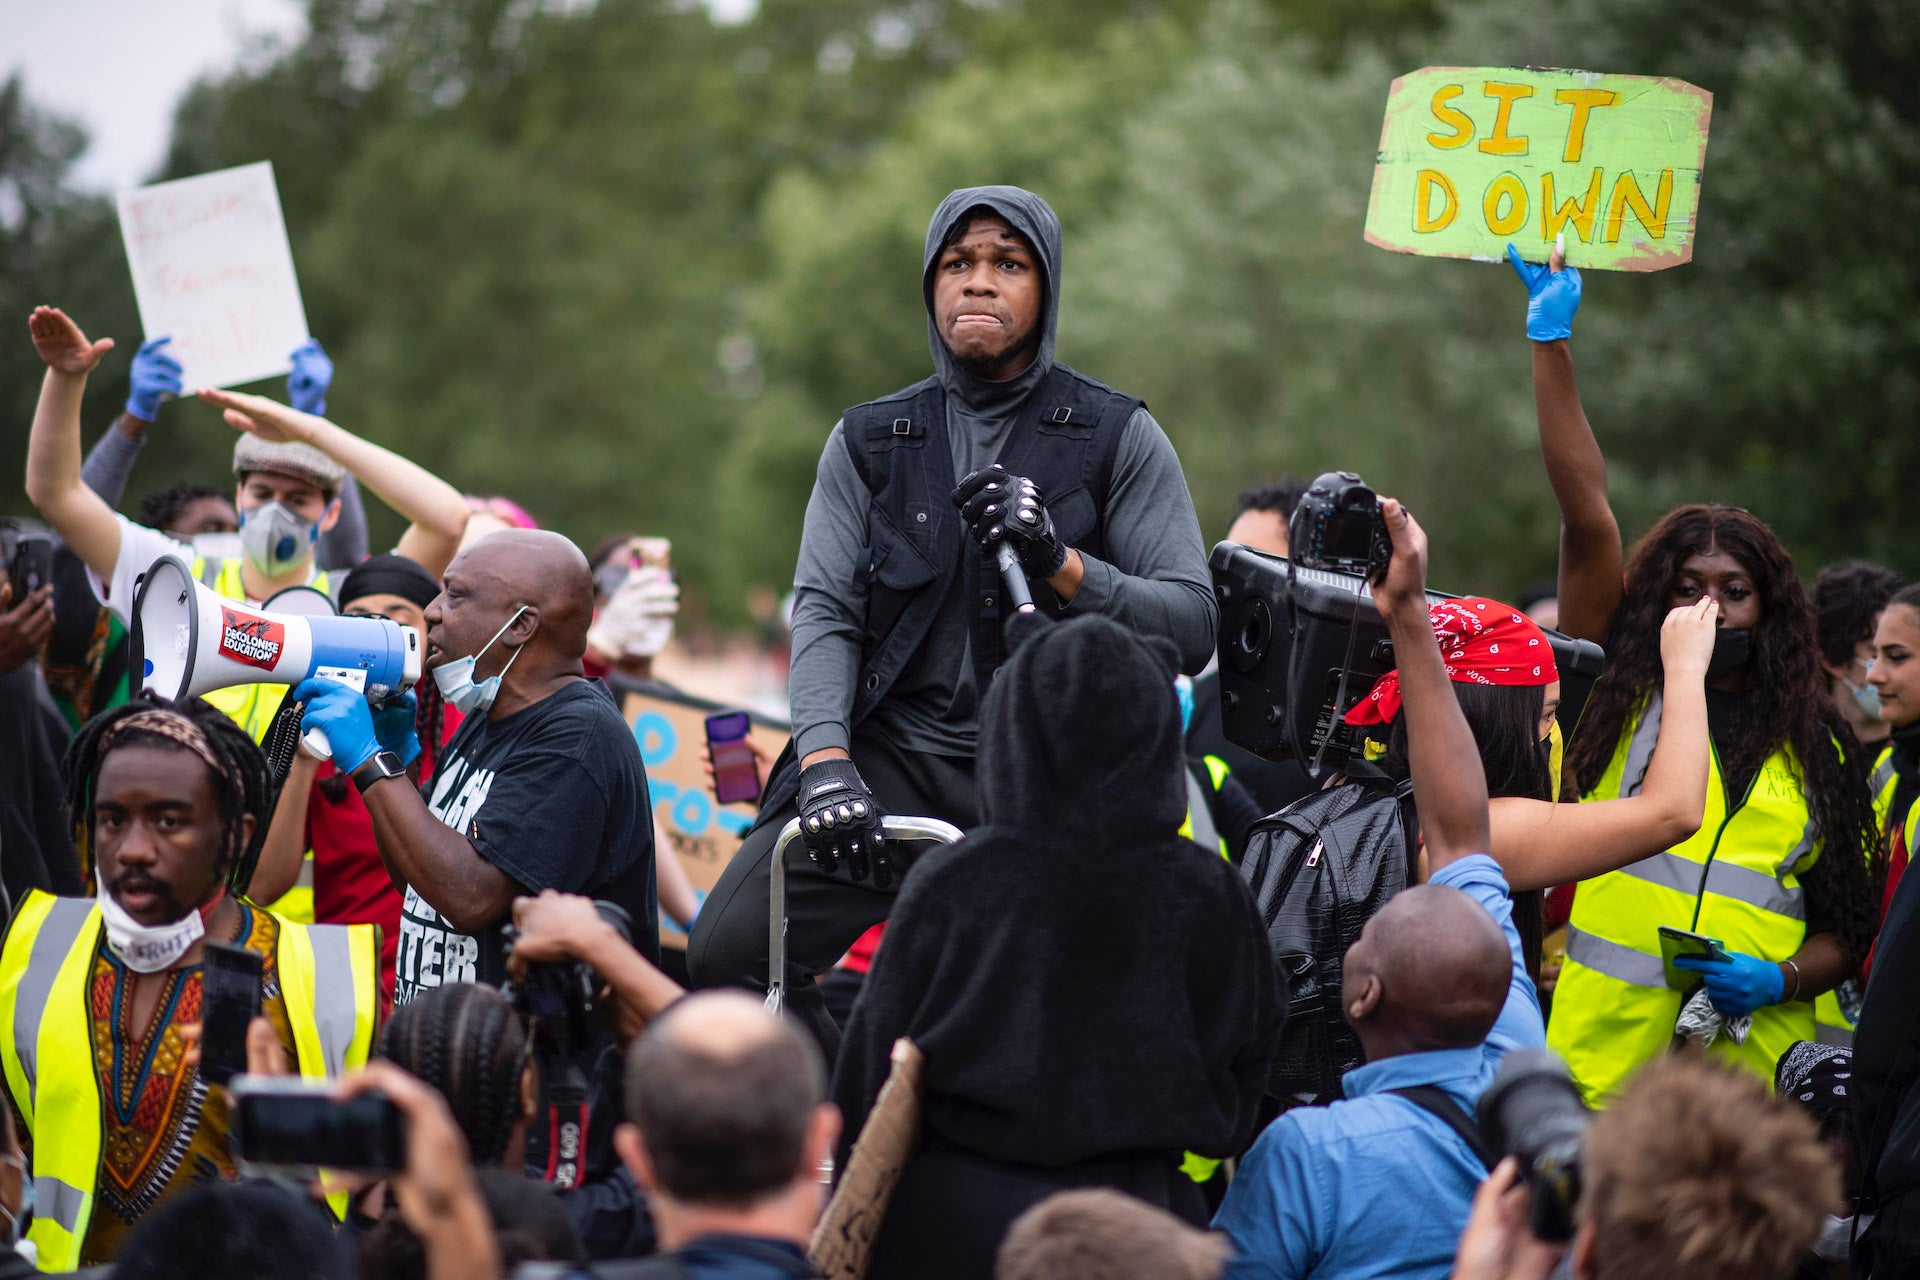 ‘Star Wars’ Actor John Boyega Demands Respect For Black Lives At London Protest